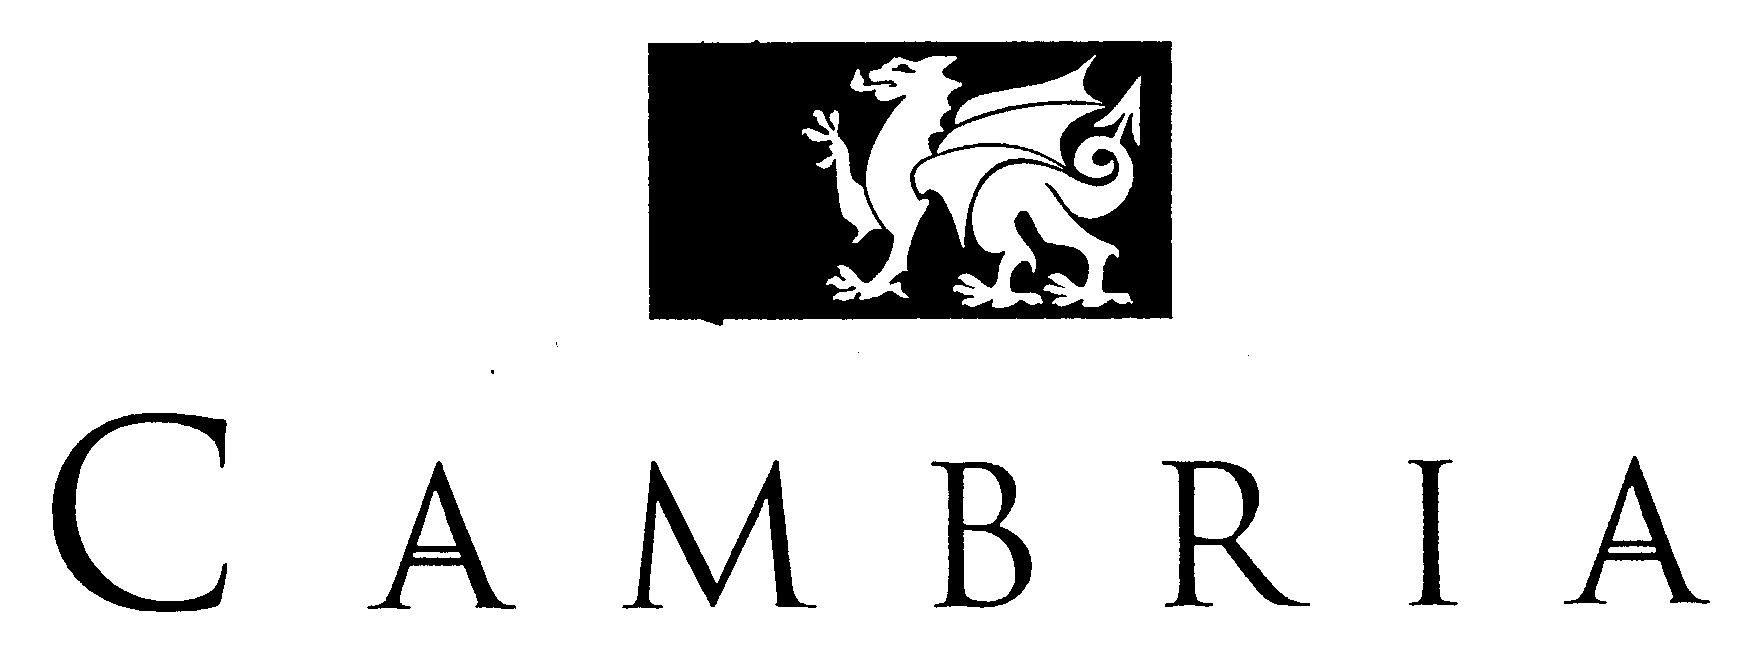 Trademark Logo CAMBRIA